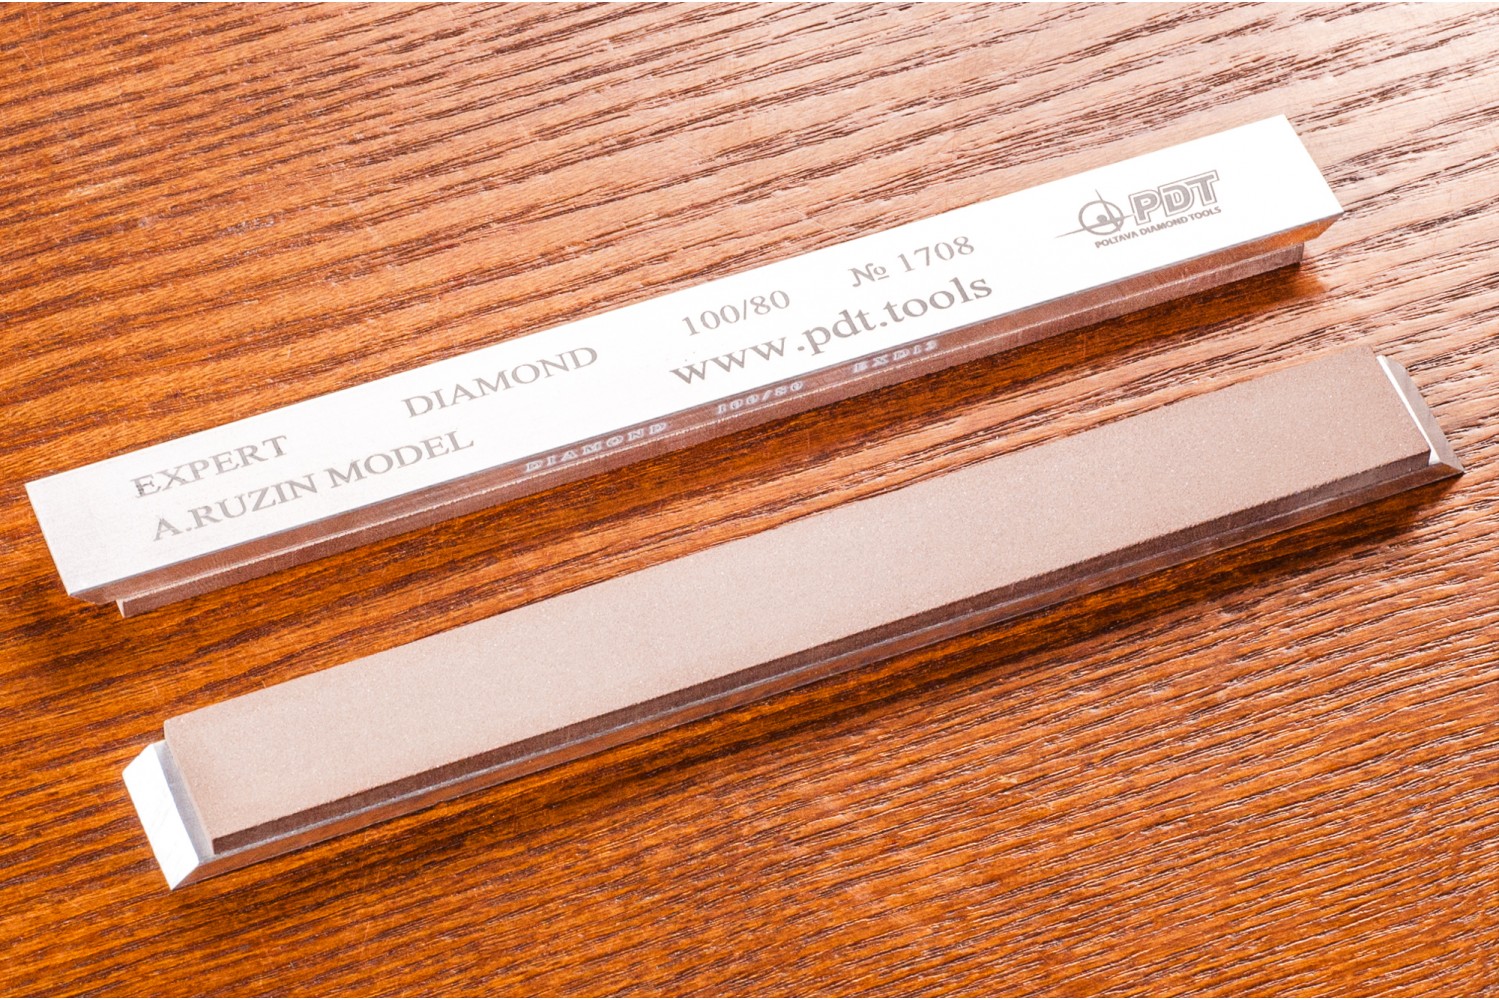 Алмазный брусок для заточки PDT EXPERT 150-17-3мм 100/80 мкм на алюминиевом бланке запасной точильный модуль для ножей с углом заточки 20 градусов к электрическому станку chef schoice 2100